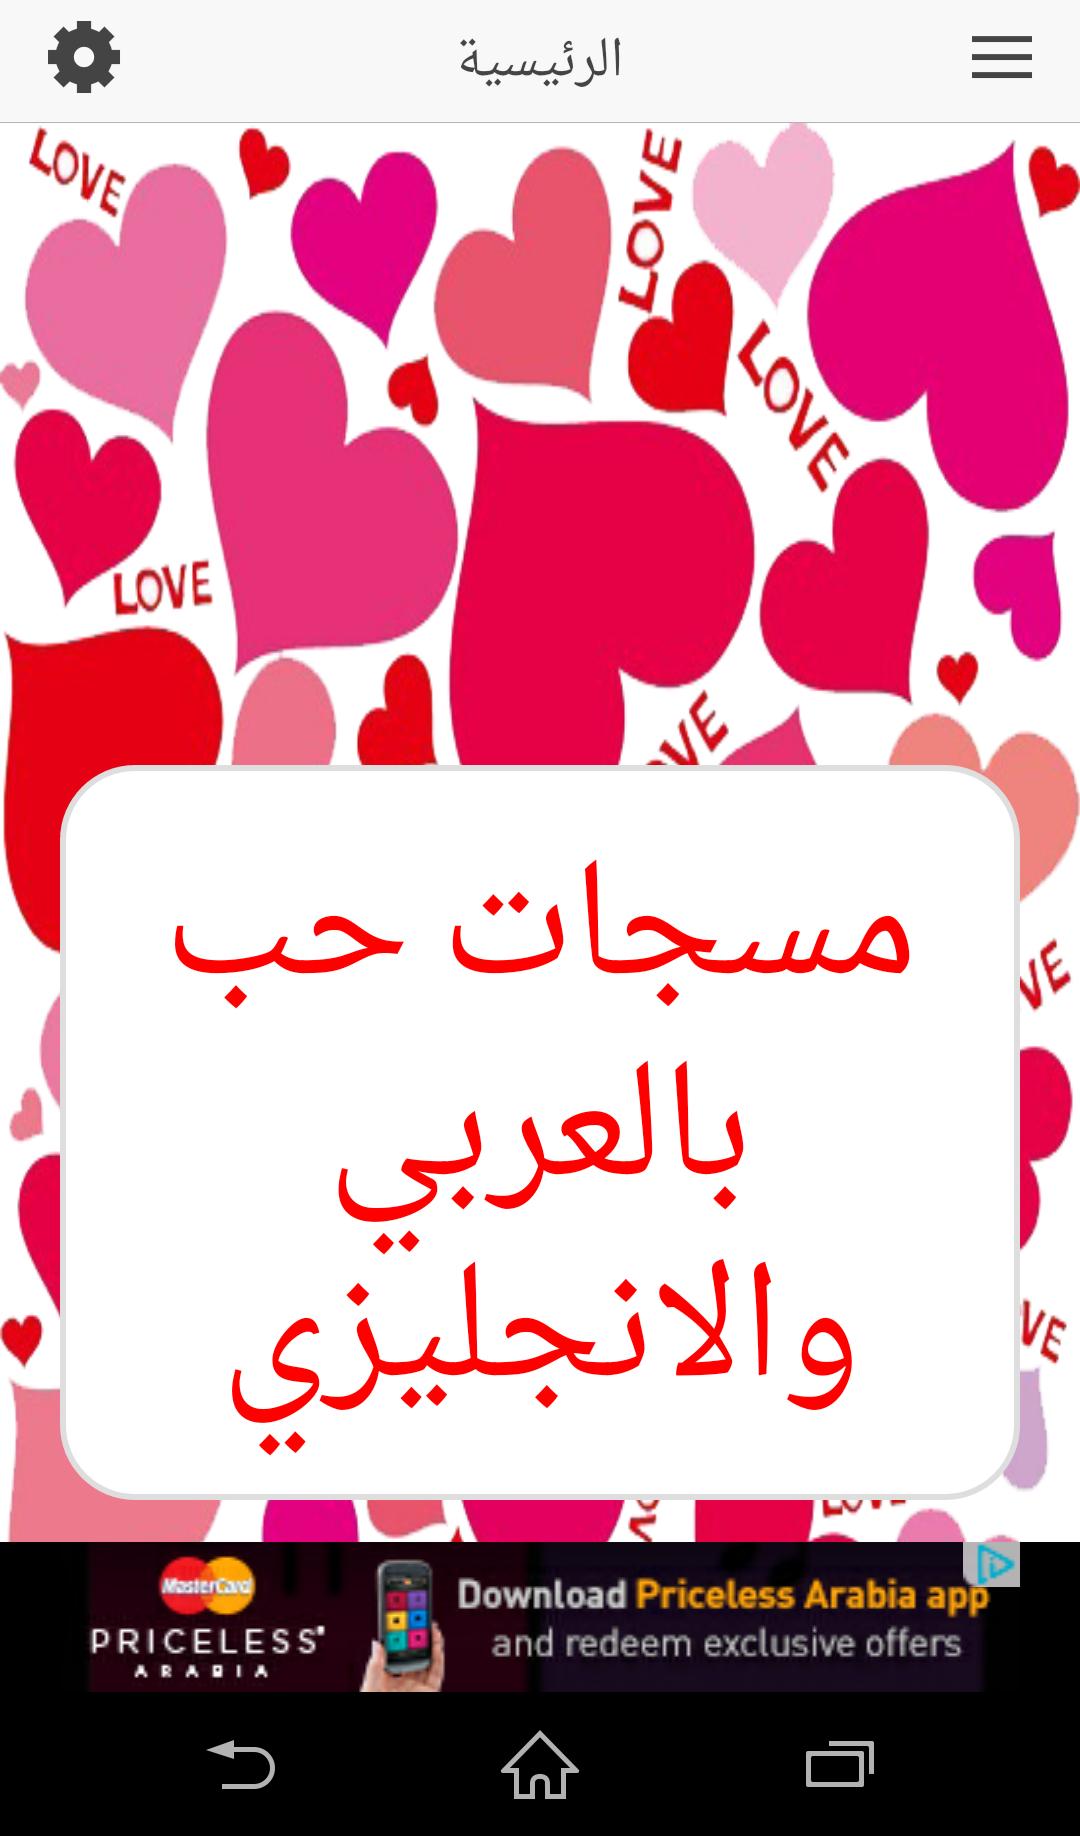 رسائل حب بالانجليزية مترجمة الى العربية Risala Blog